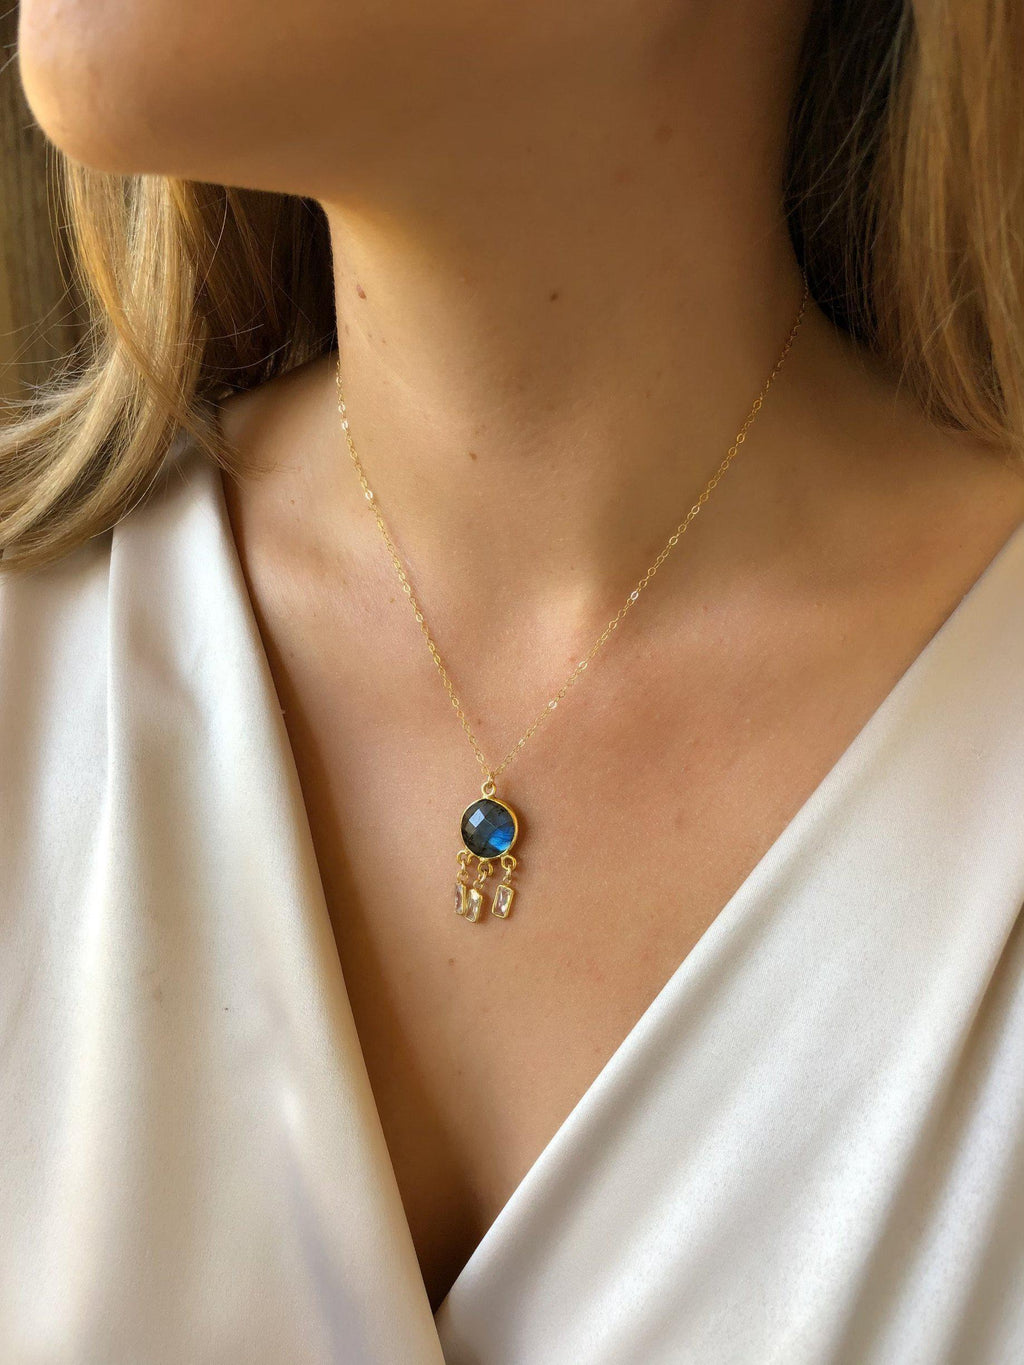 Erin Shaker Necklace in Labradorite-Necklaces-Waffles & Honey Jewelry-Waffles & Honey Jewelry